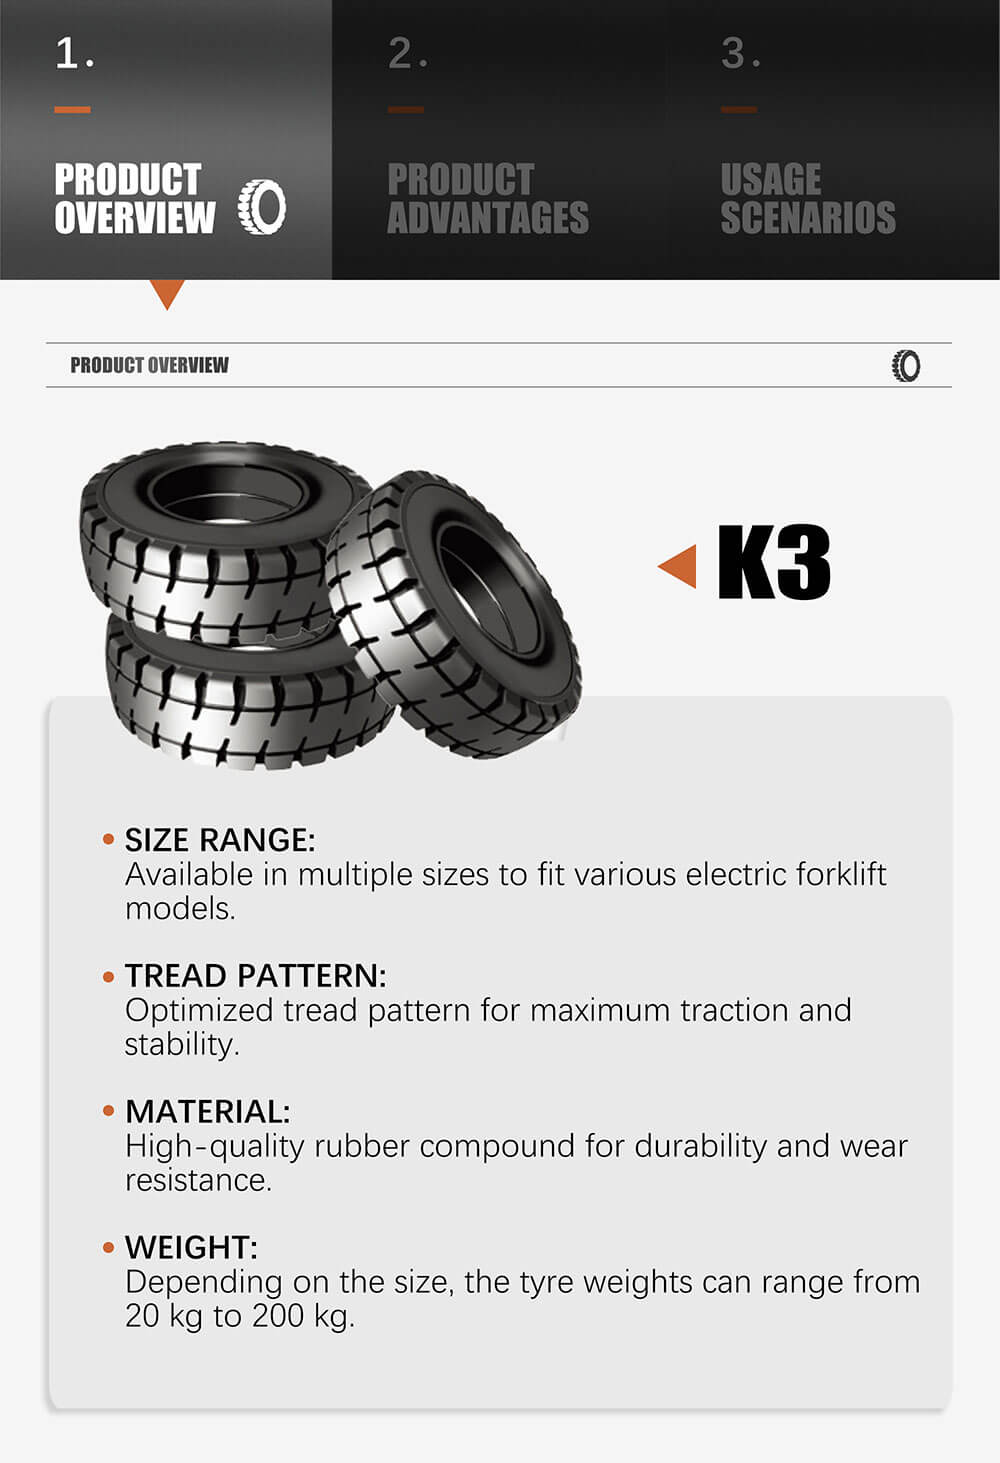 K3 Electric Forklift Tyres